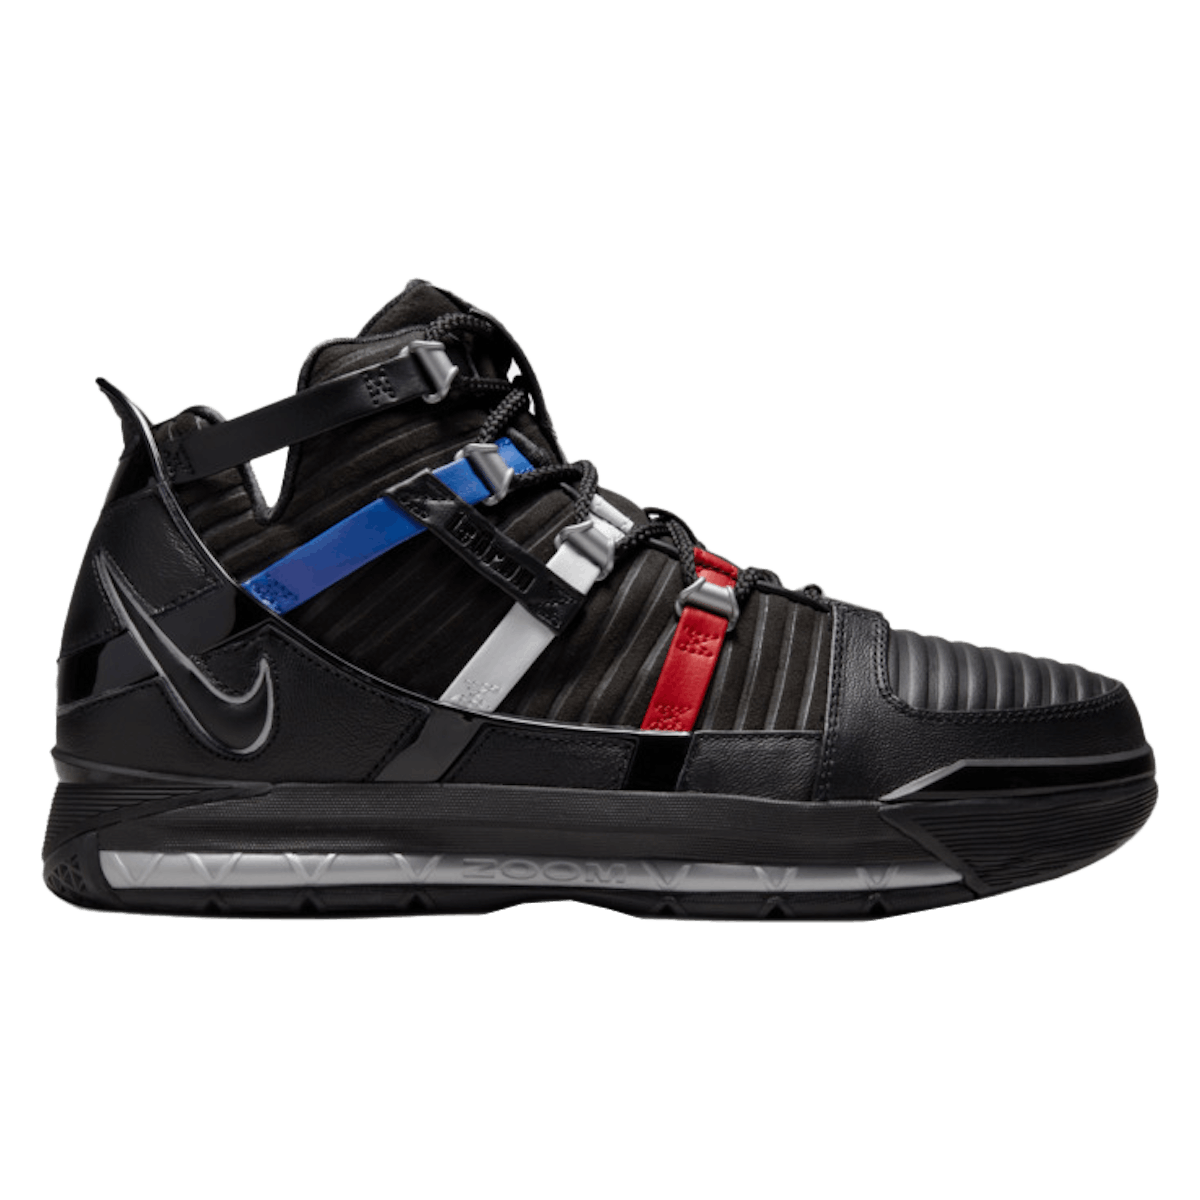 Nike Zoom LeBron III "Black University"